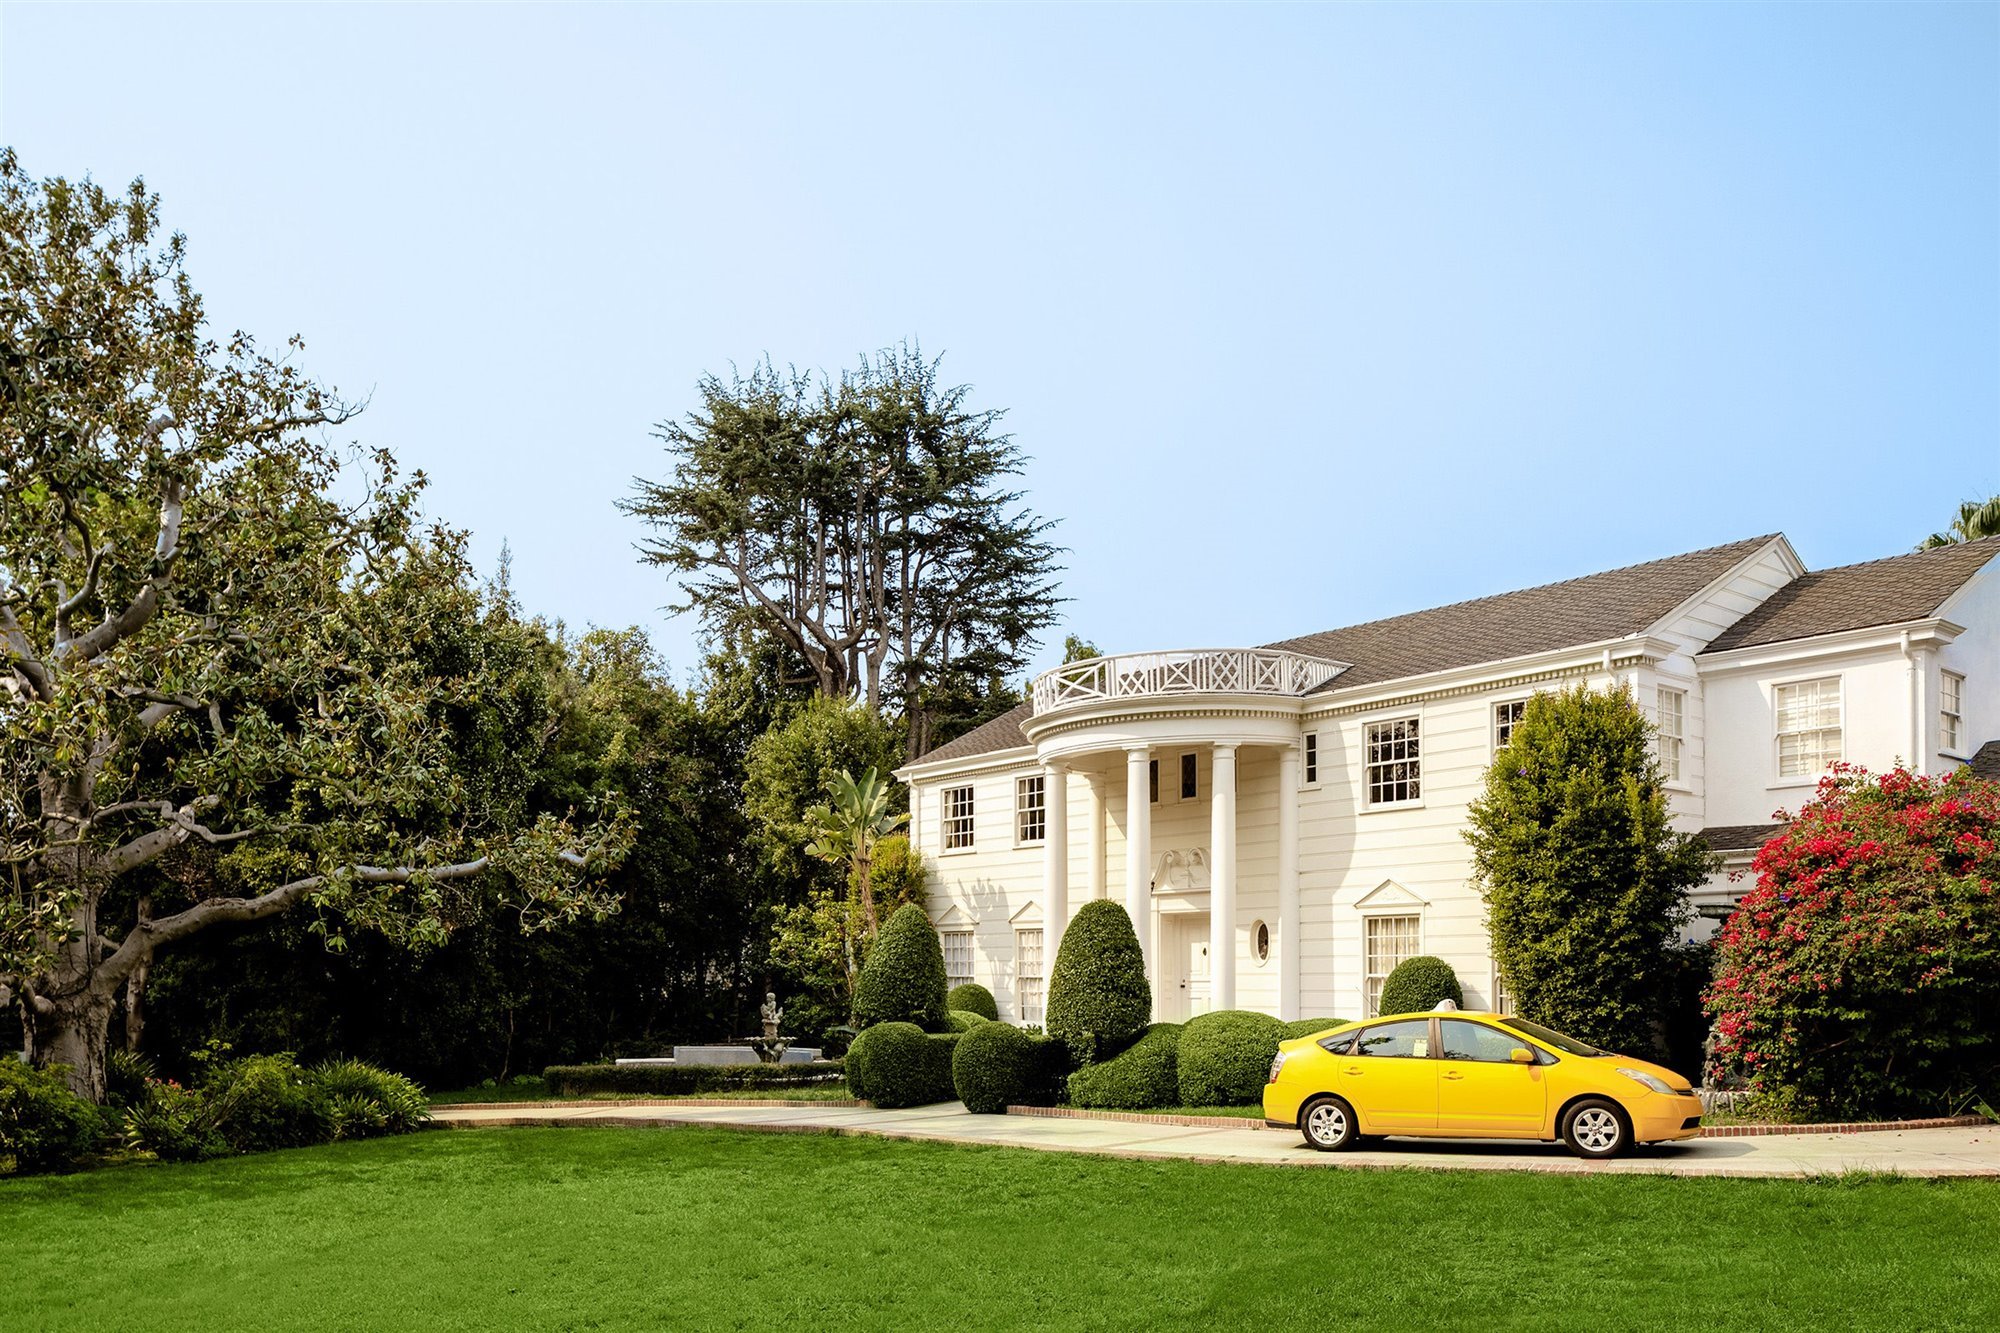 Entrada con coche amarillo de la mansión del principe de Bel Air Will Smith